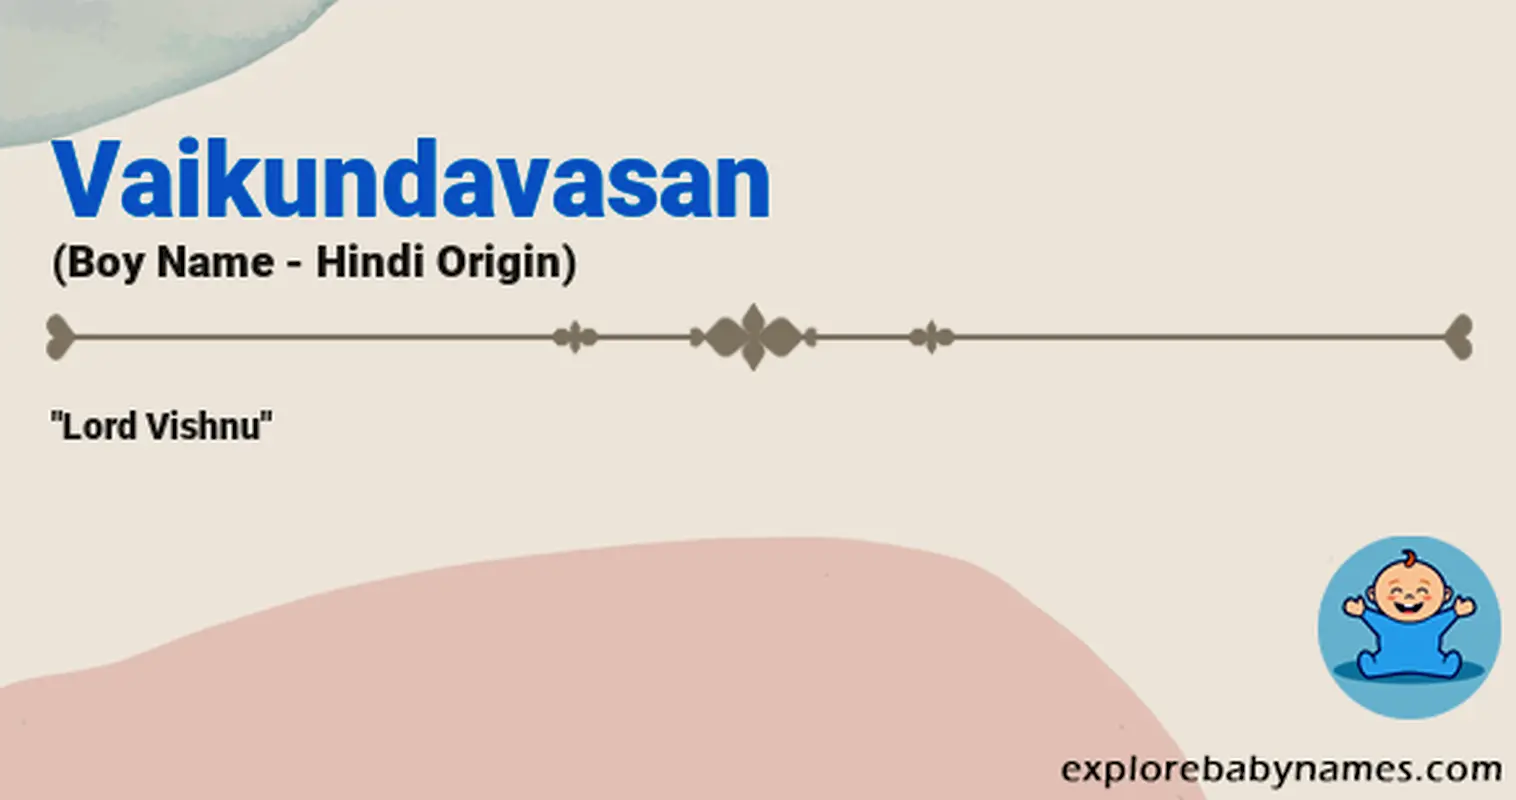 Meaning of Vaikundavasan